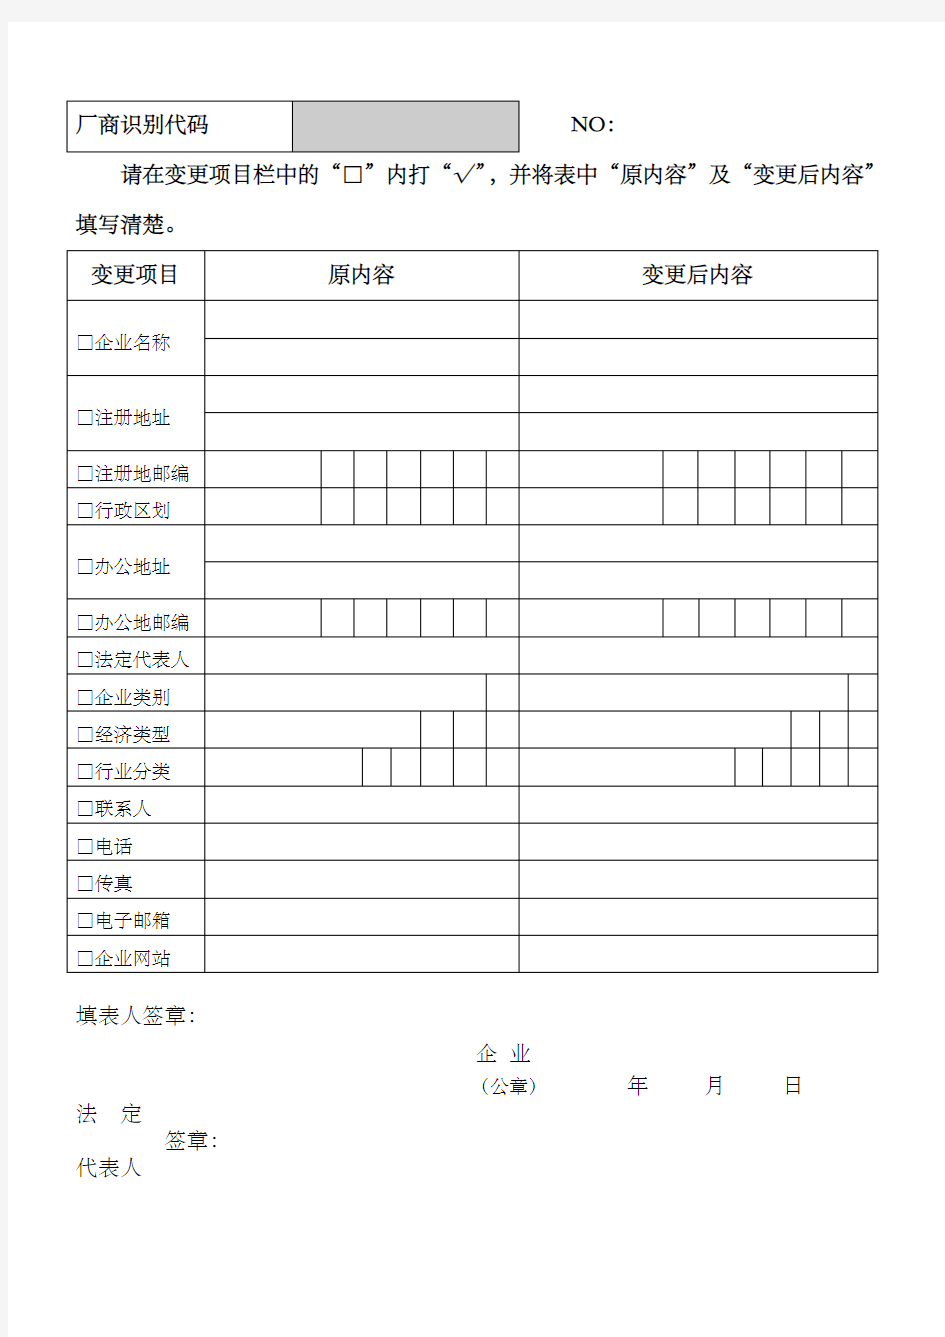 中国商品条形码系统注册、变更及注销